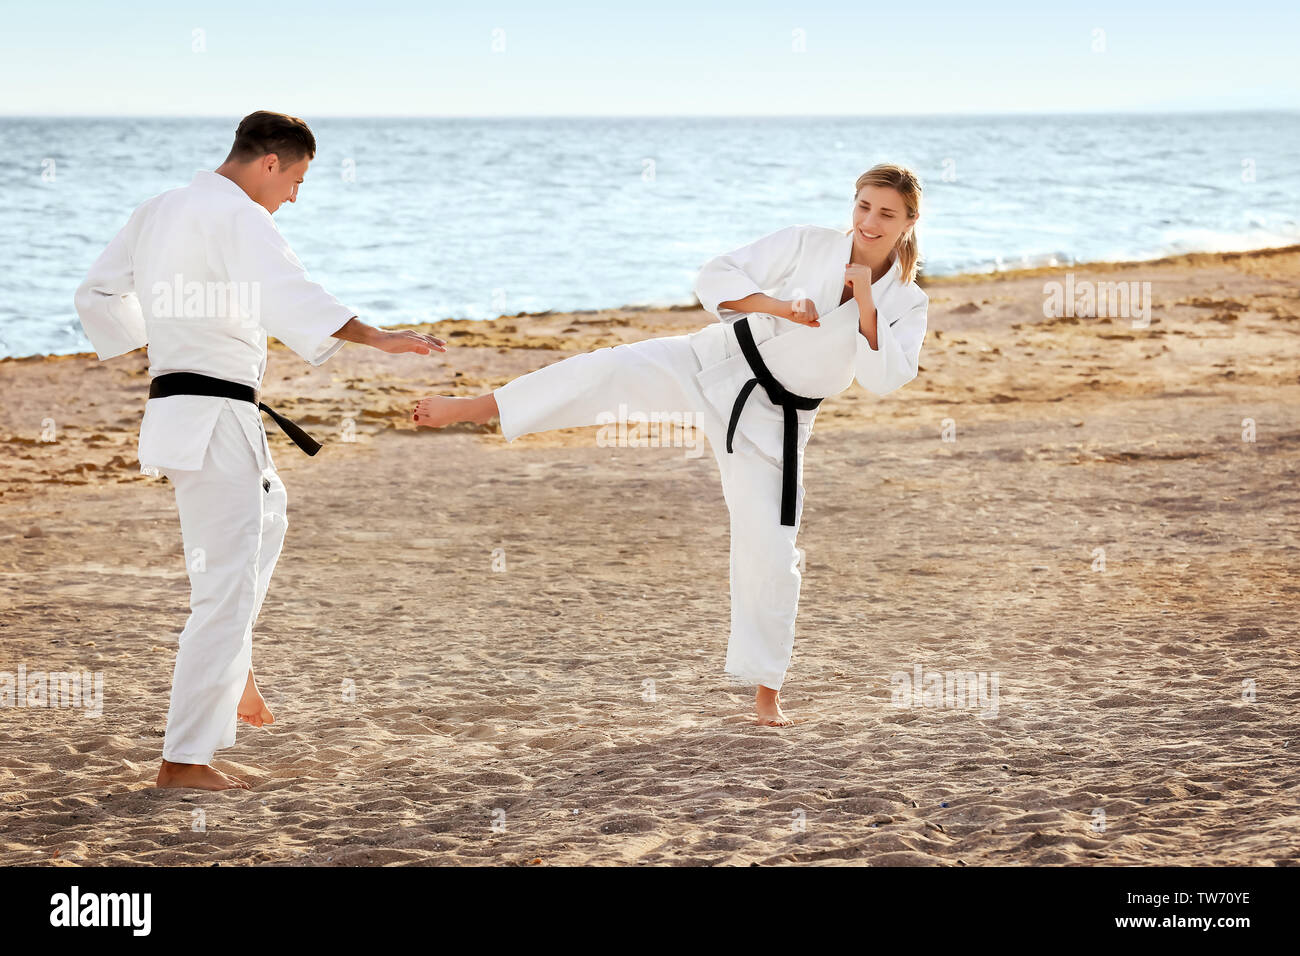 Giovane uomo e donna a praticare il karate all'aperto Foto Stock